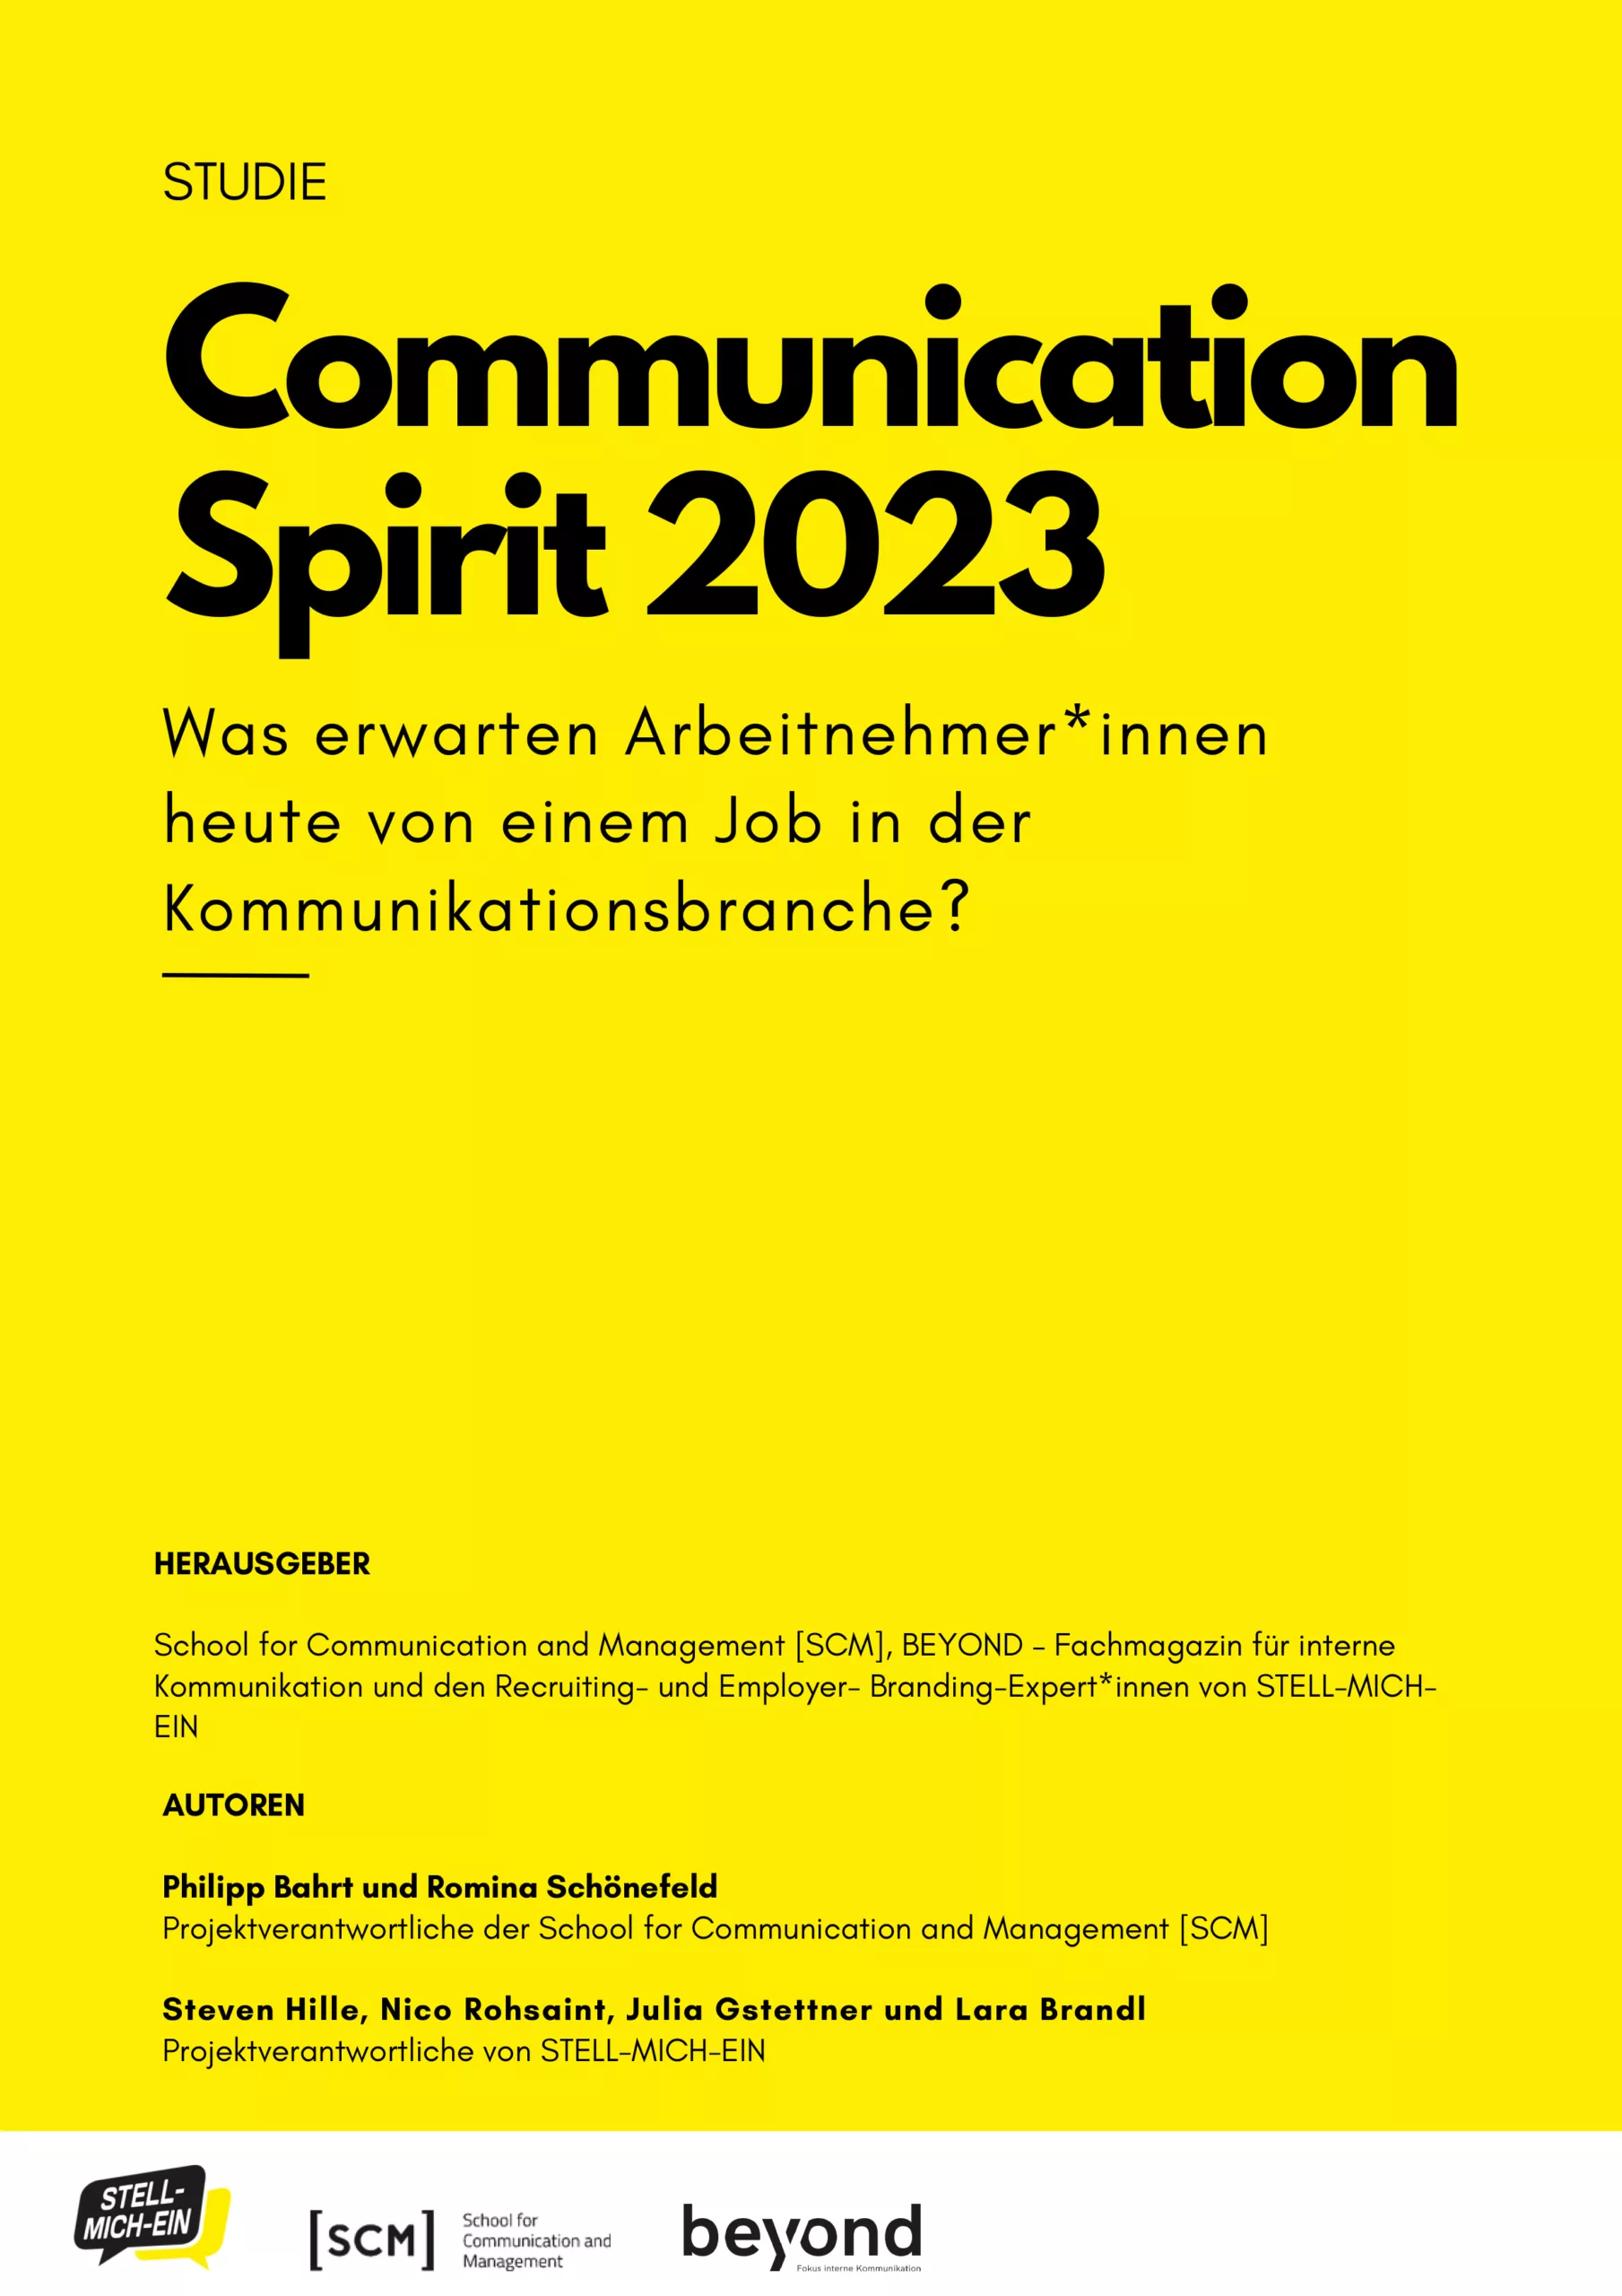 Communication Spirit 2023 – Was Mitarbeitende von der Kommunikationsbranche erwarten